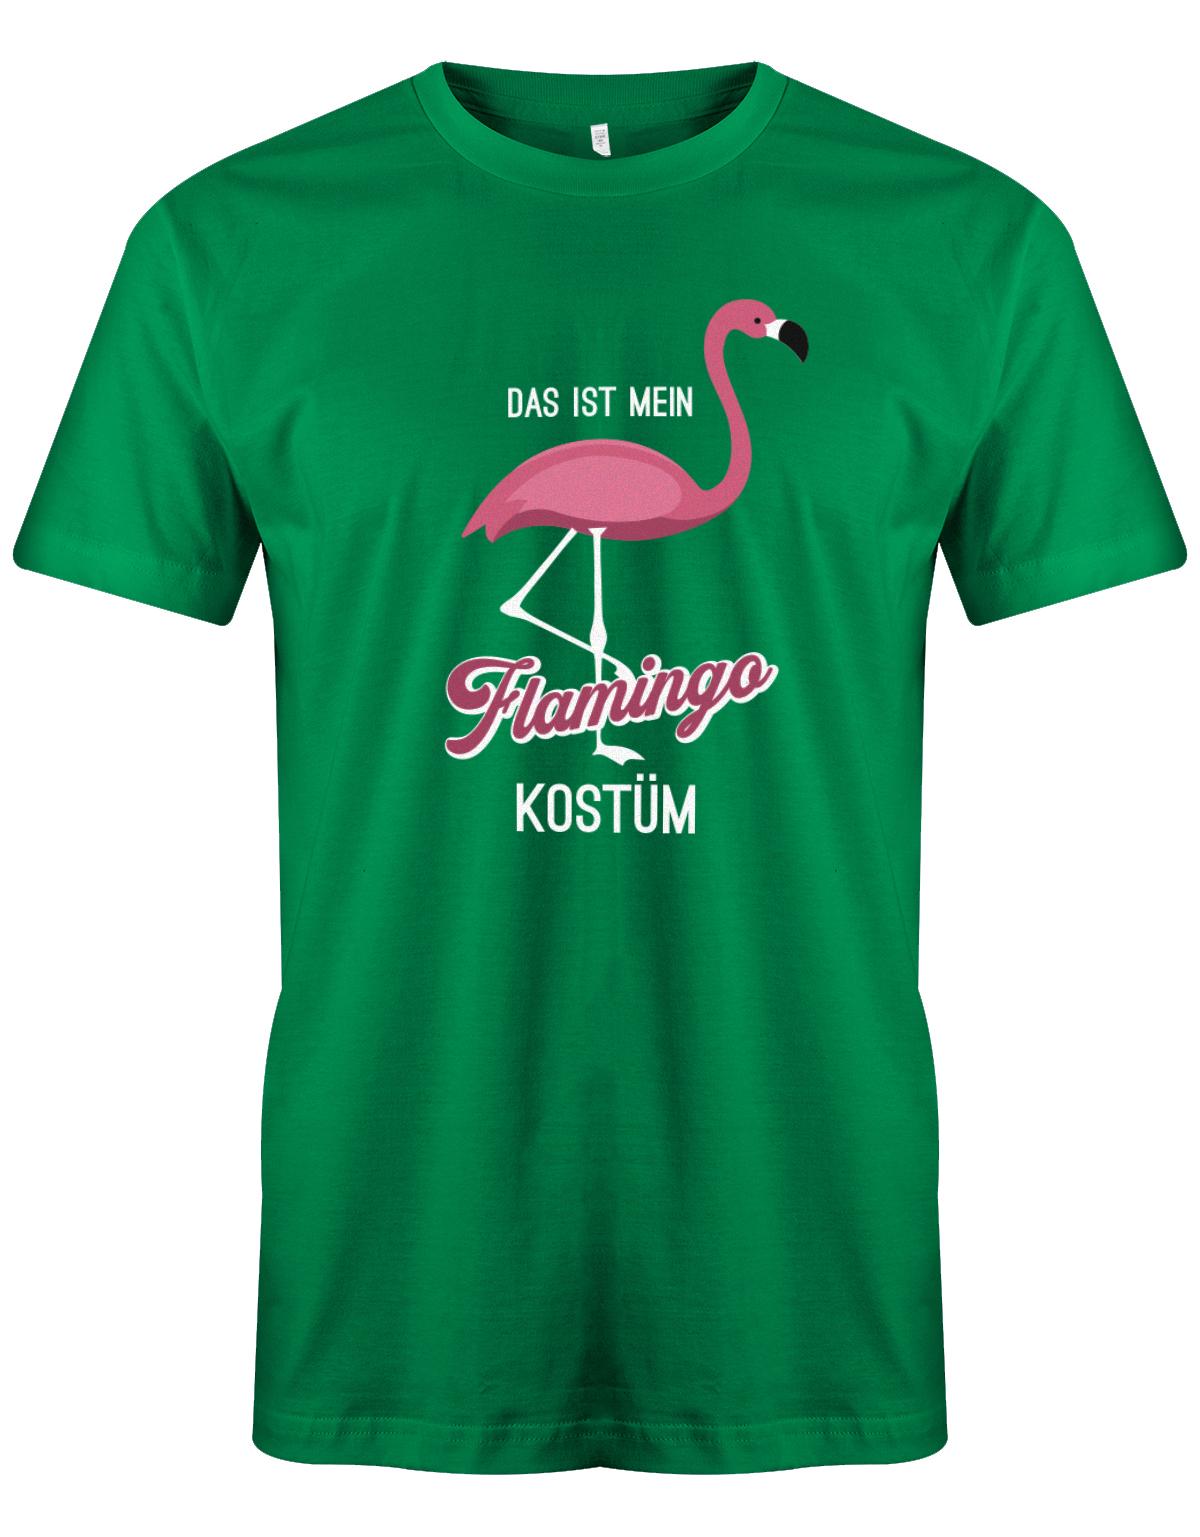 Das-ist-mein-Flamingo-Kost-m-Fasching-Karneval-Verkleidung-Shirt-Herren-Gr-n